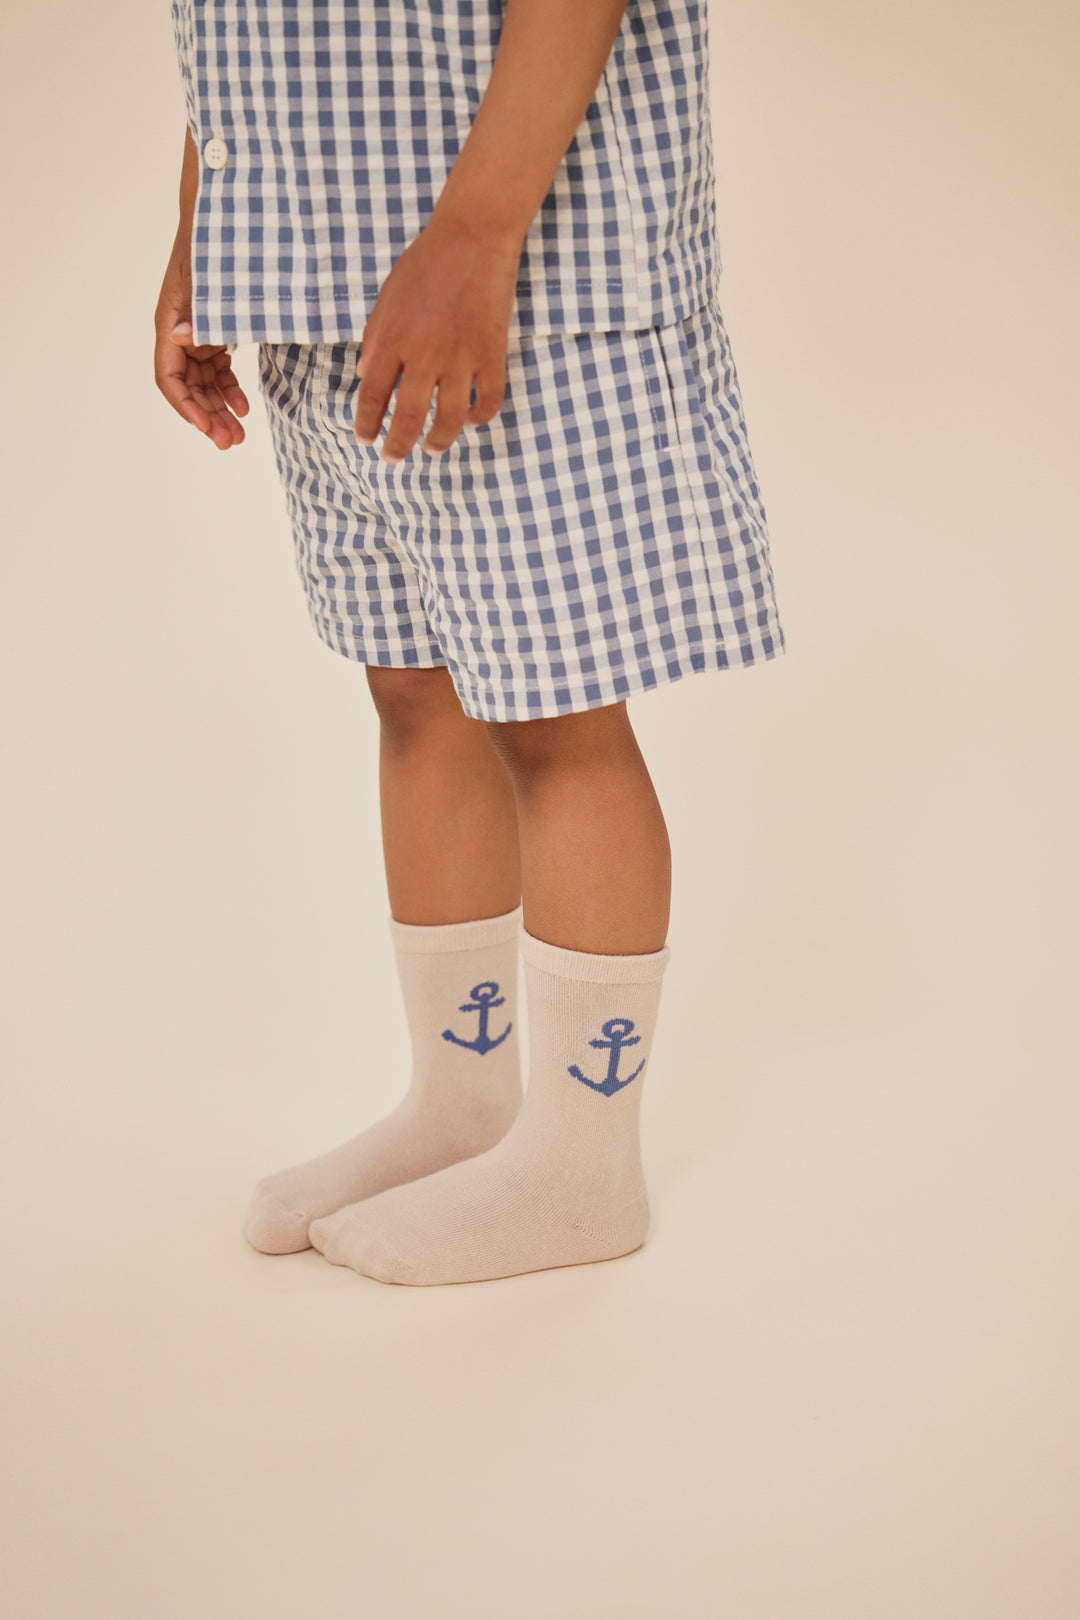 Jacquard sokkar, 2 pør, Ancher